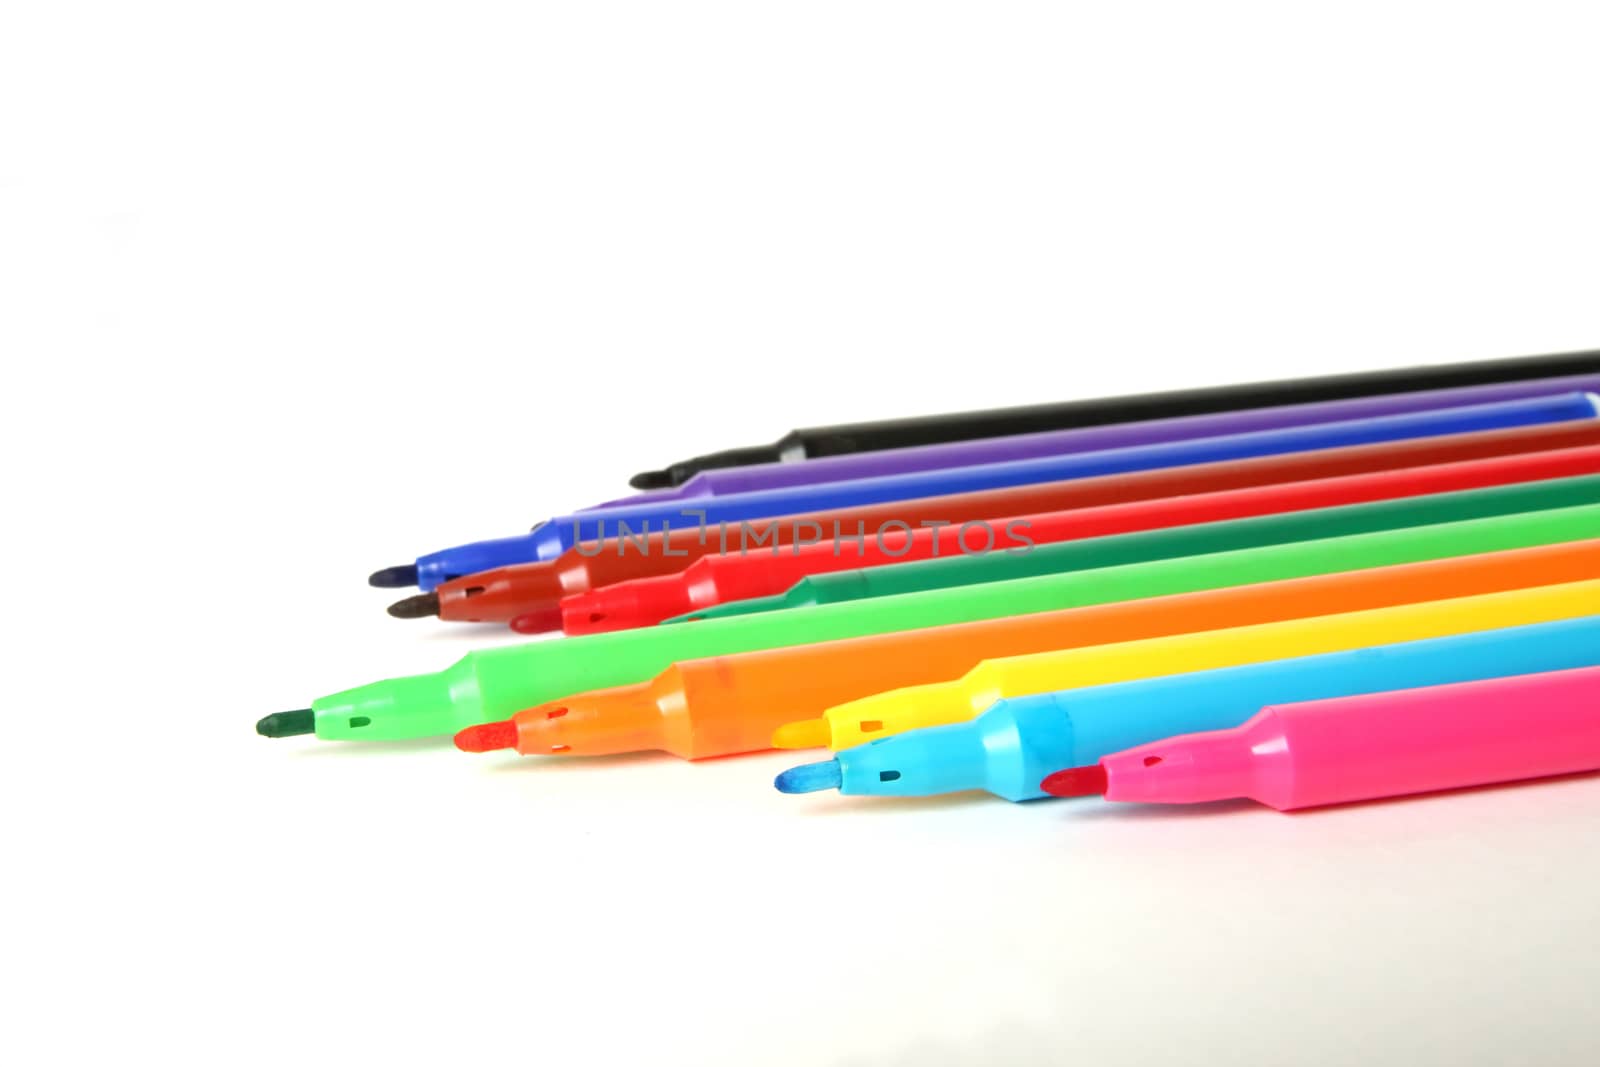 Twelve color marker pens on white background.